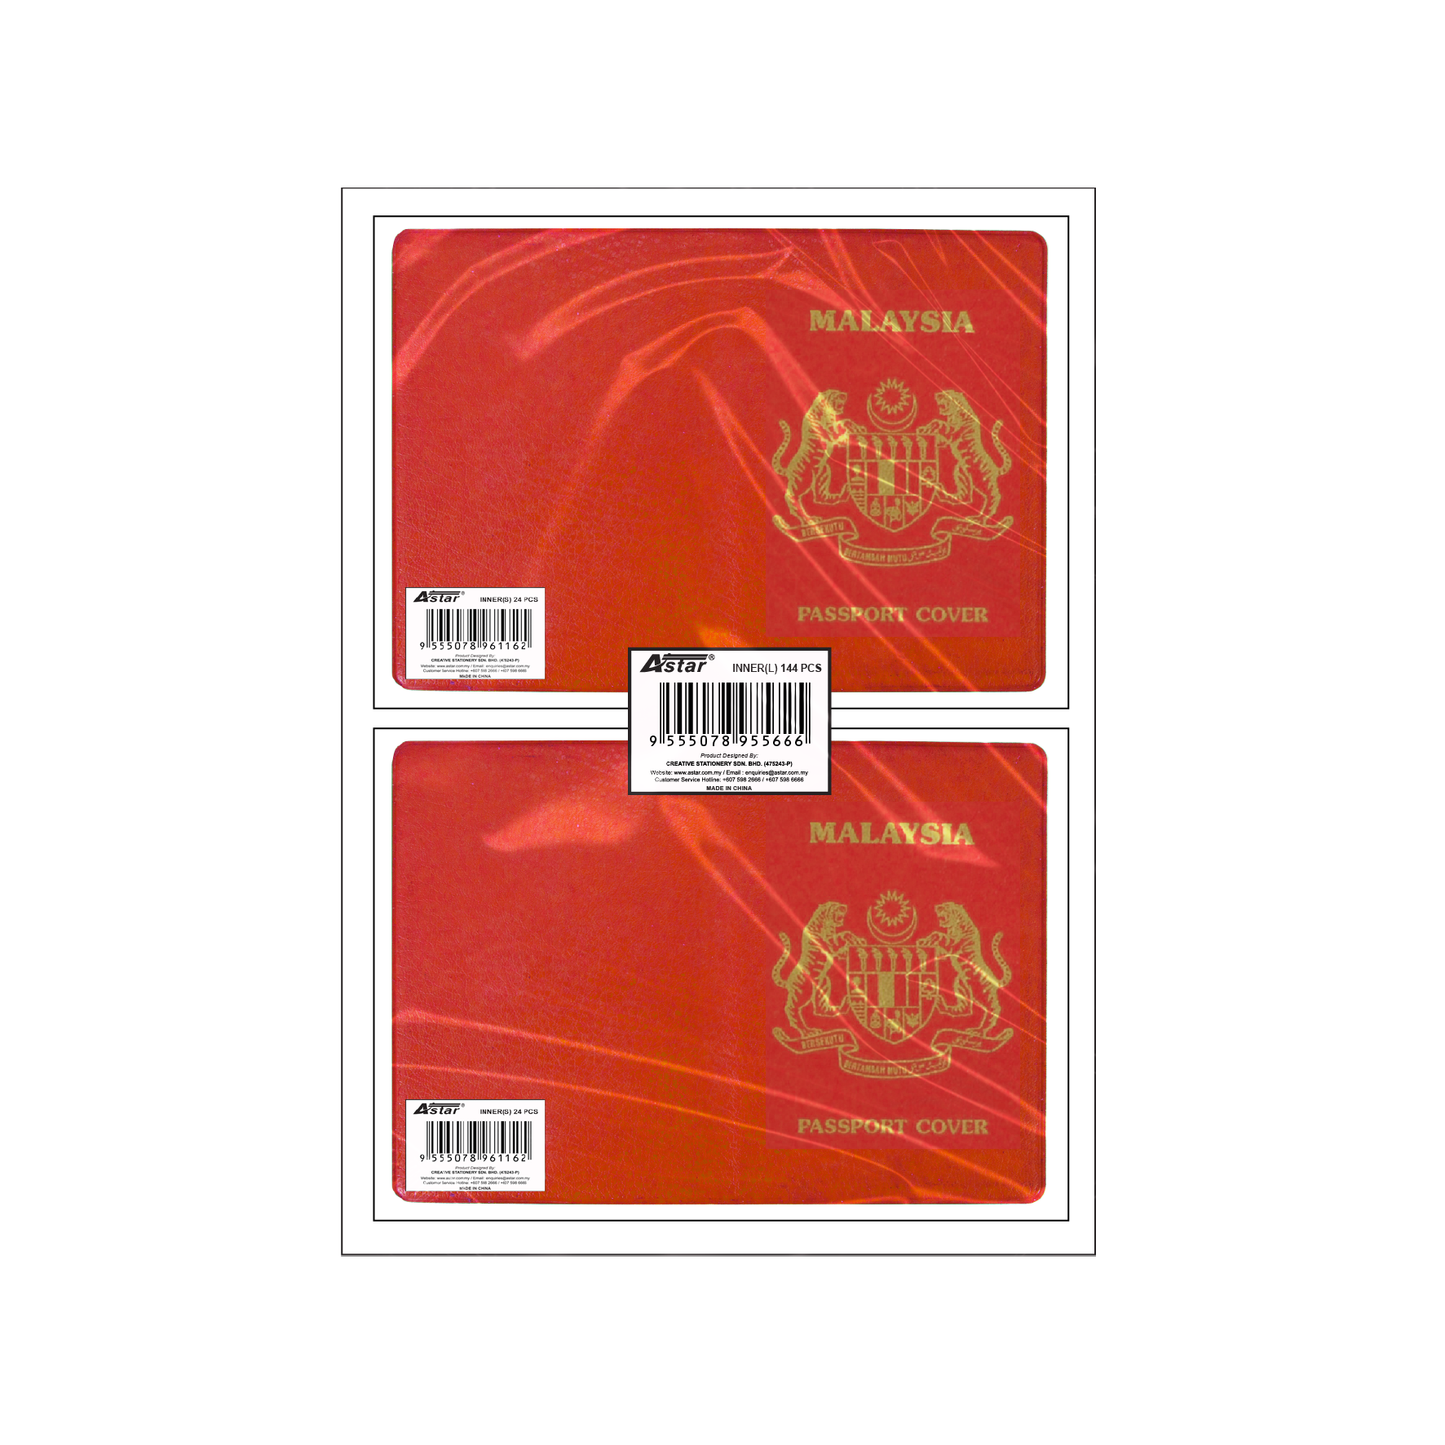 PSCR-R - ASTAR PASSPORT COVER